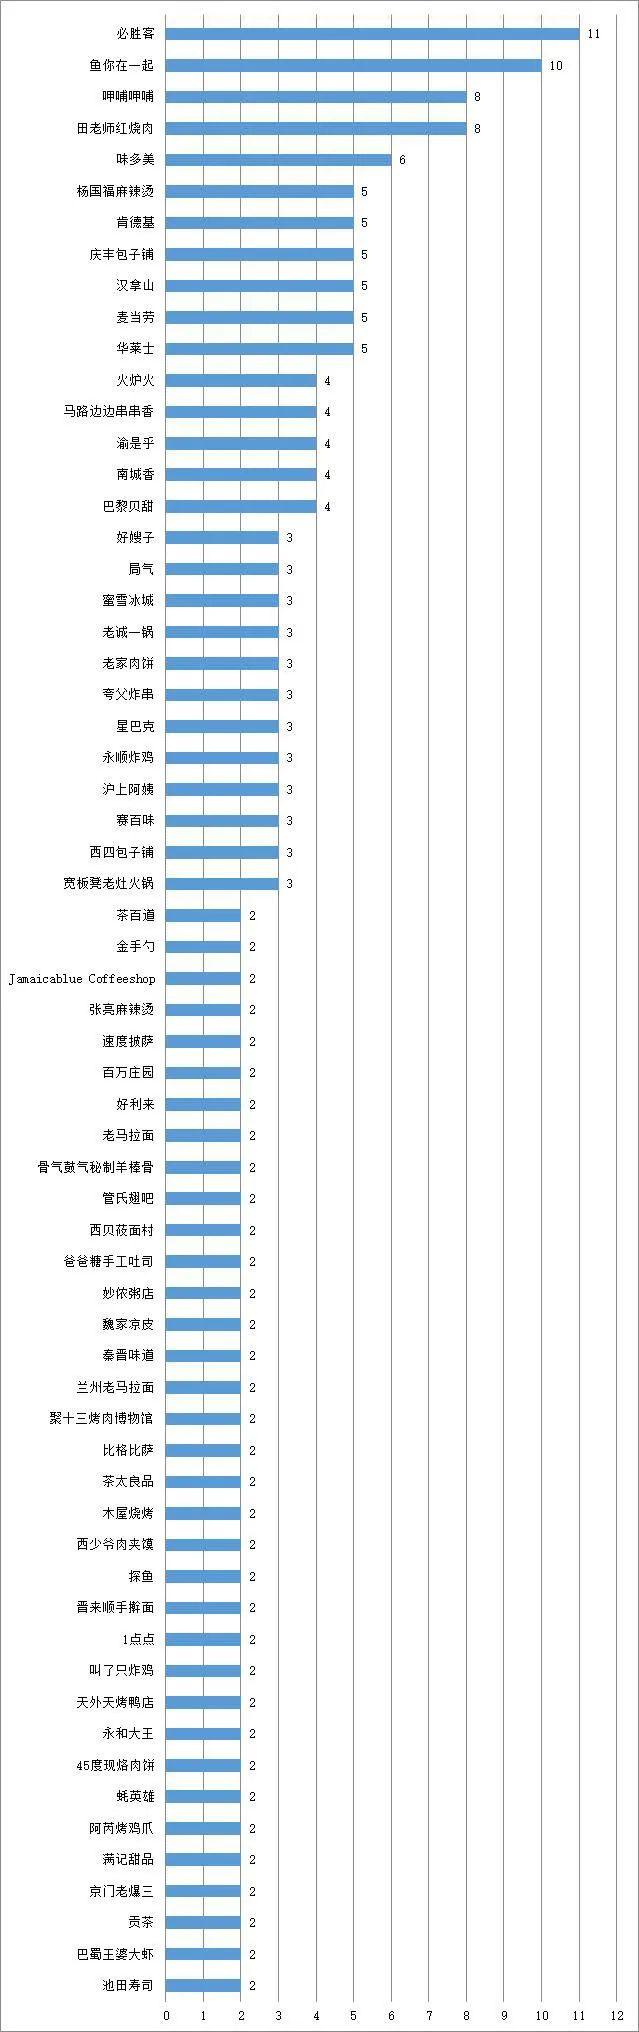 北京消协通报一批问题餐饮企业名单 必胜客排名第一